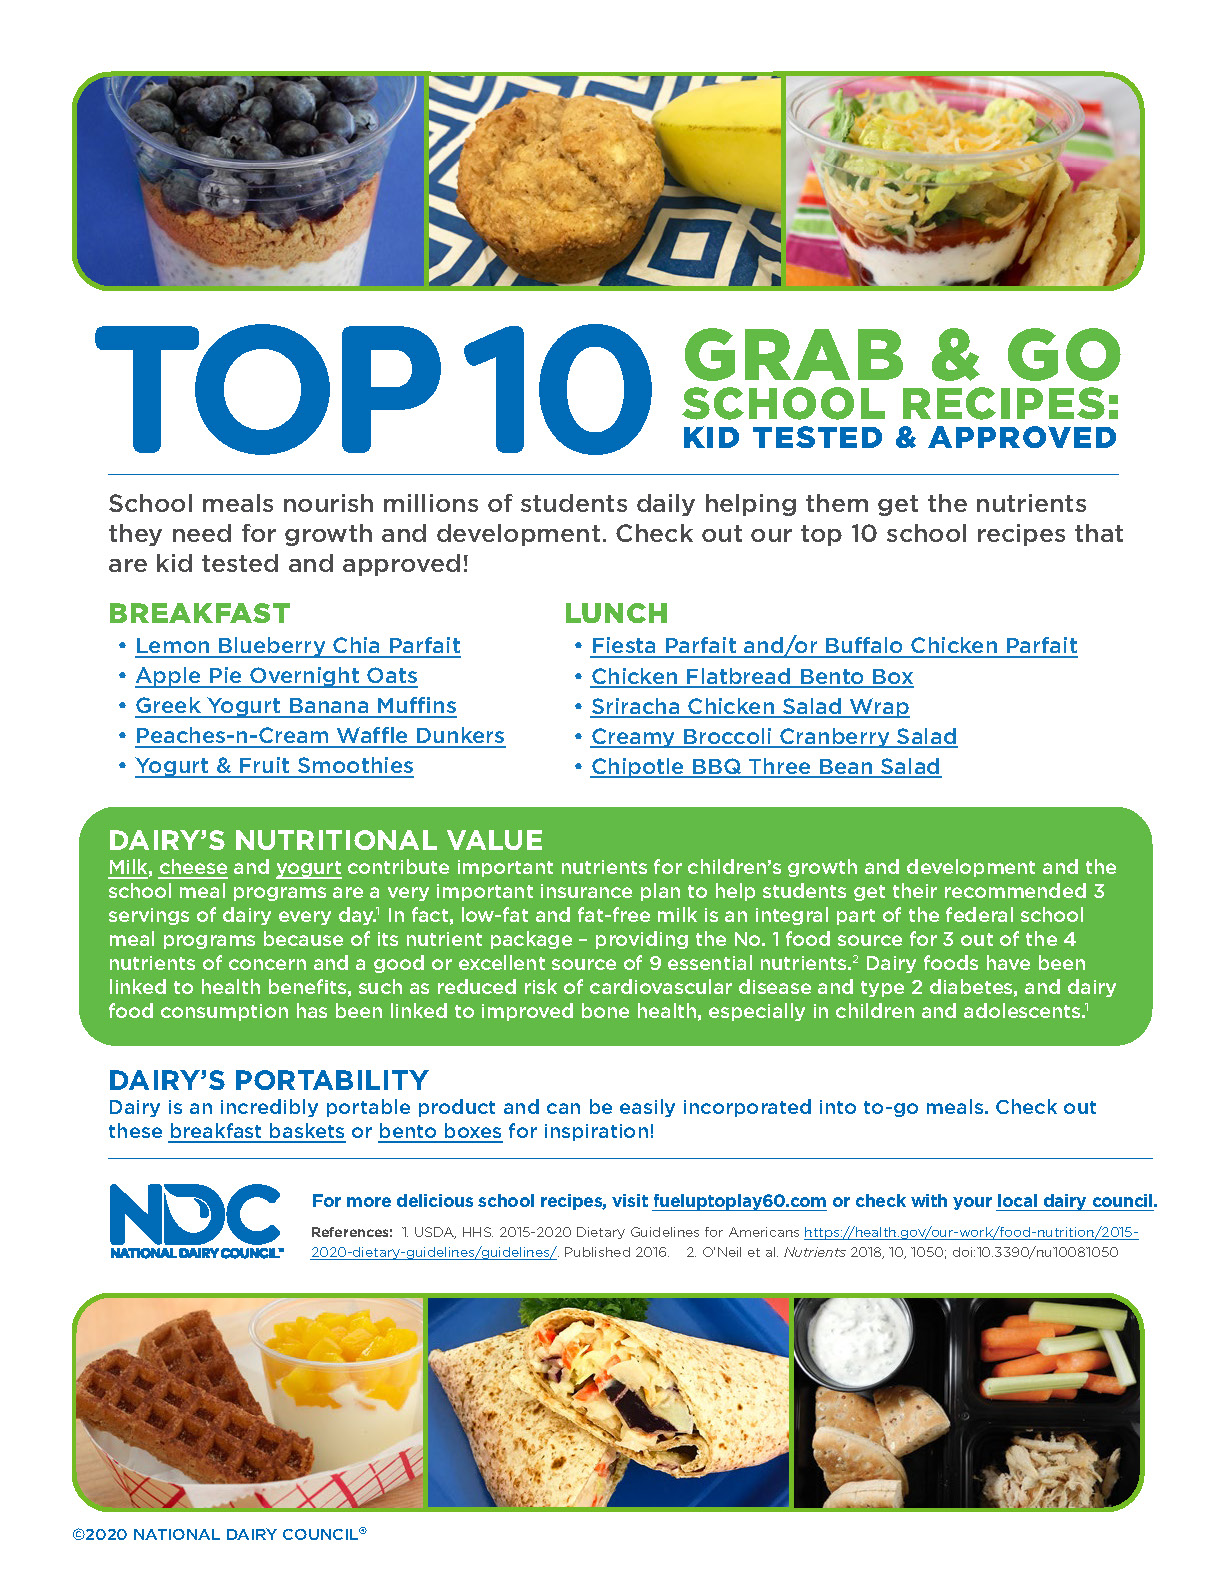 NDC Top 10 Grab & Go School Recipes Image